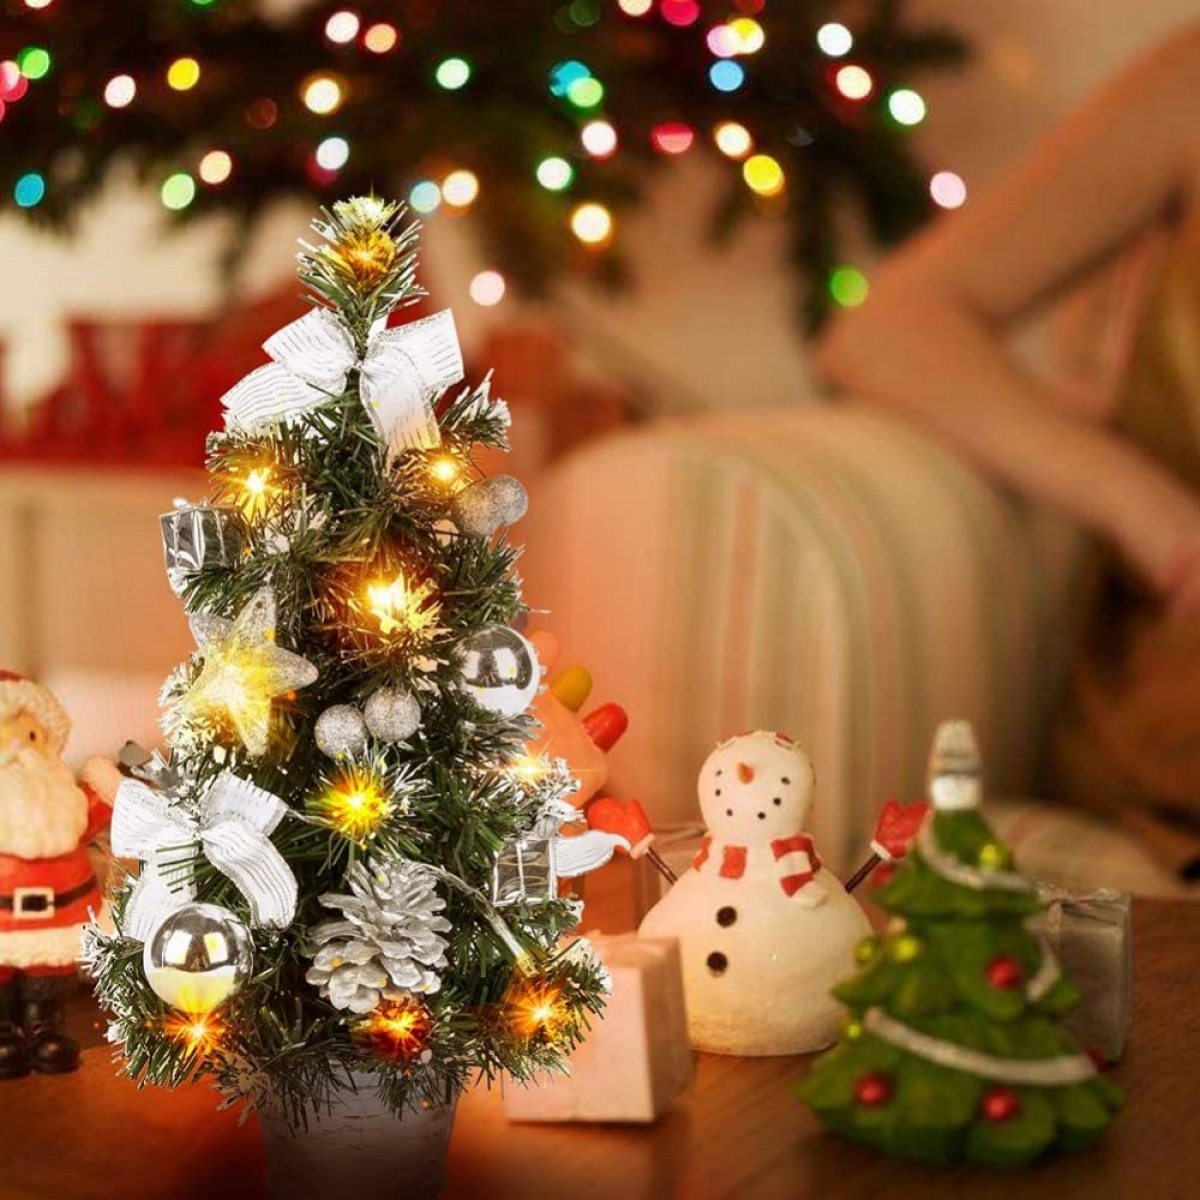 COZEVDNT Mini Weihnachtsbaum mit Silber Weihnachtsdeko, Beleuchtung und Baumschmuck